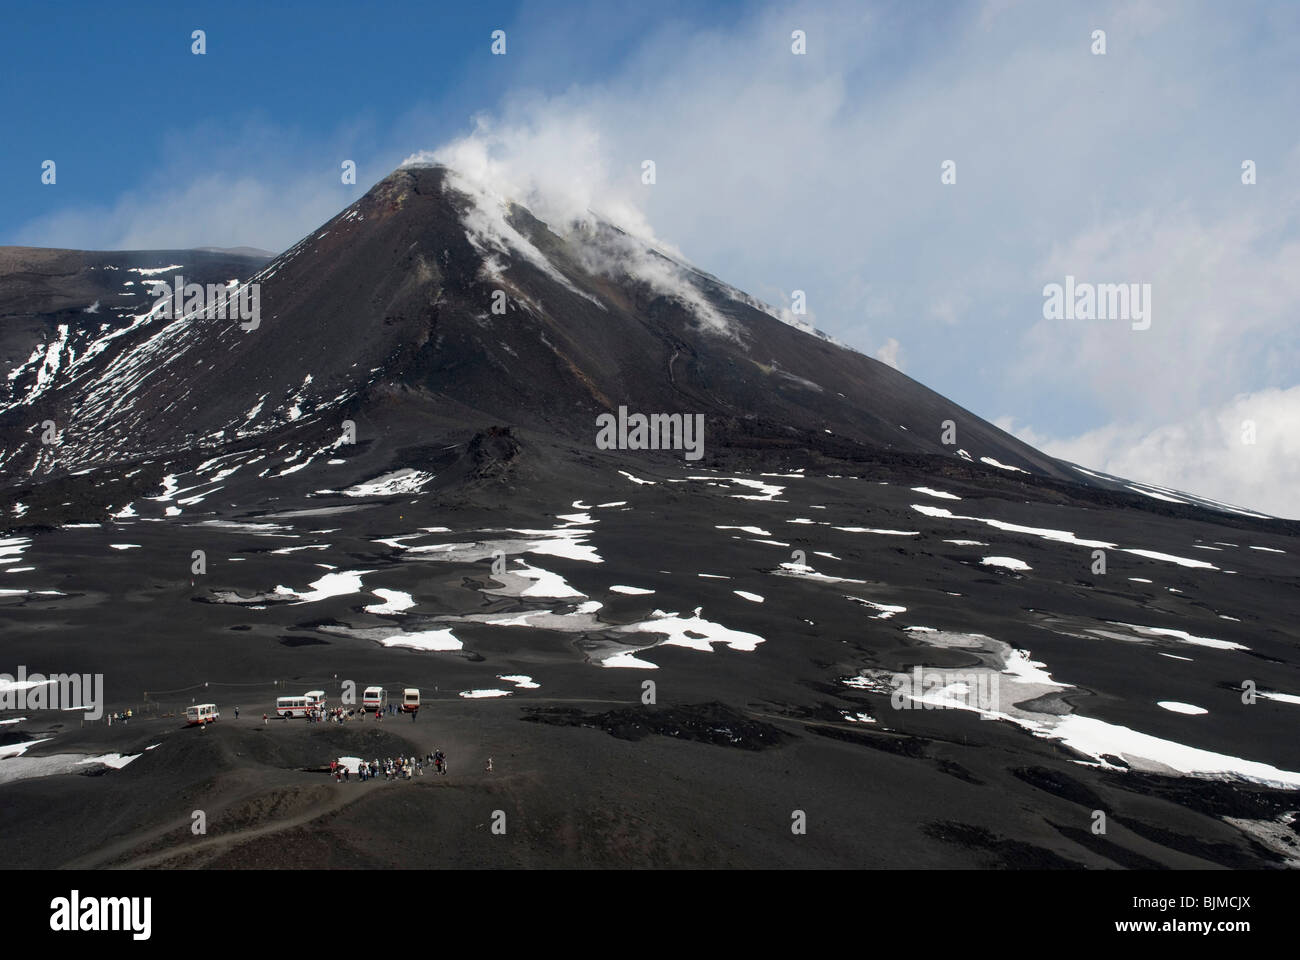 Italien, Sizilien, Ätna, Vulkanlandschaft, rauchender Vulkanberg Gipfel | Italy, Sicily, Mount Etna, smoking volcano summit Stock Photo